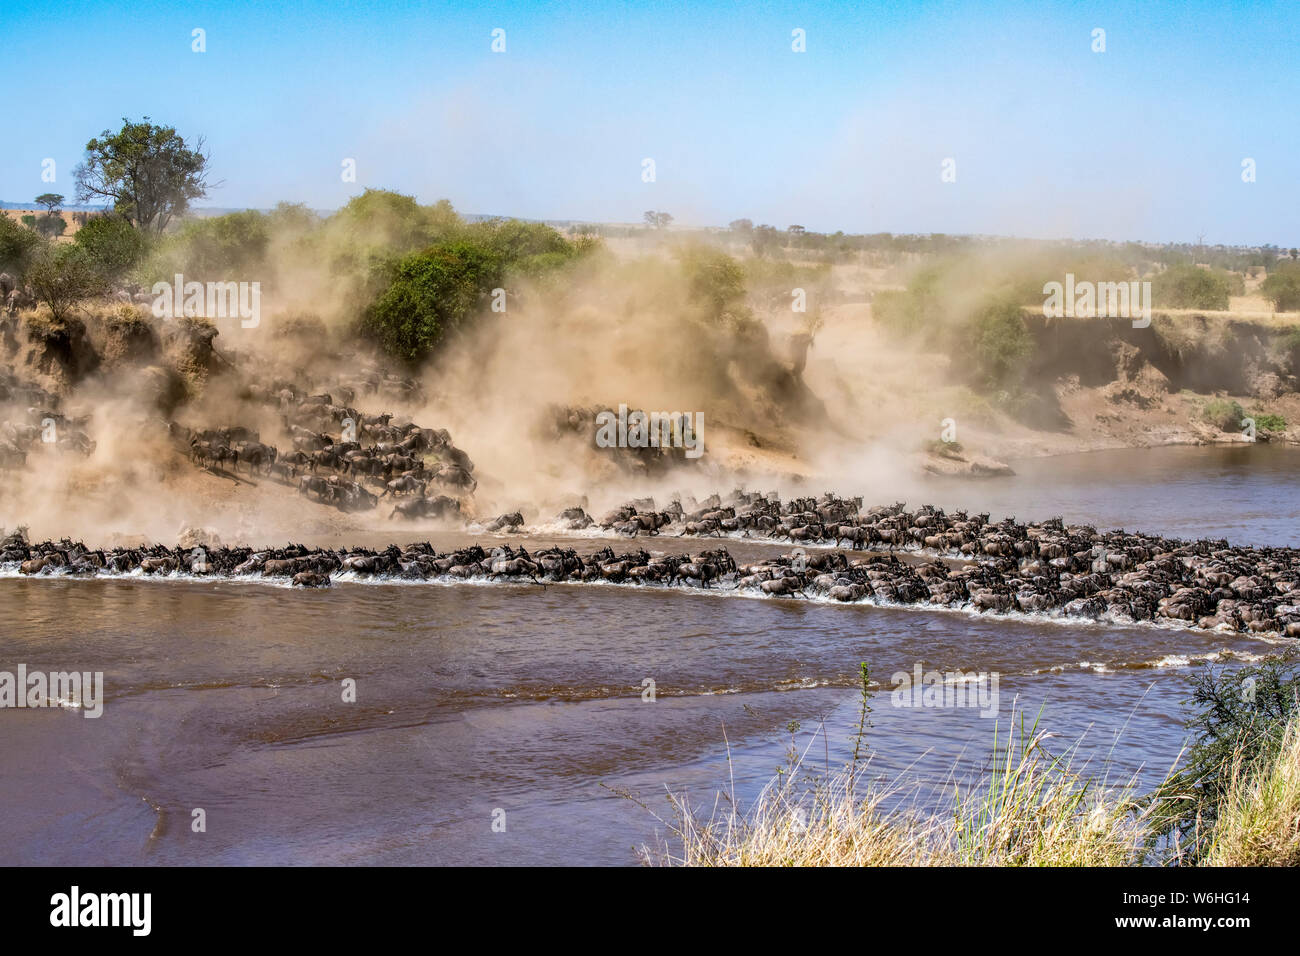 Große Herde von Gnus (connochaetes Taurinus) kick Staub wie sie stürzen hinunter einen steilen Ufer des Mara River, Serengeti National Park überqueren Stockfoto